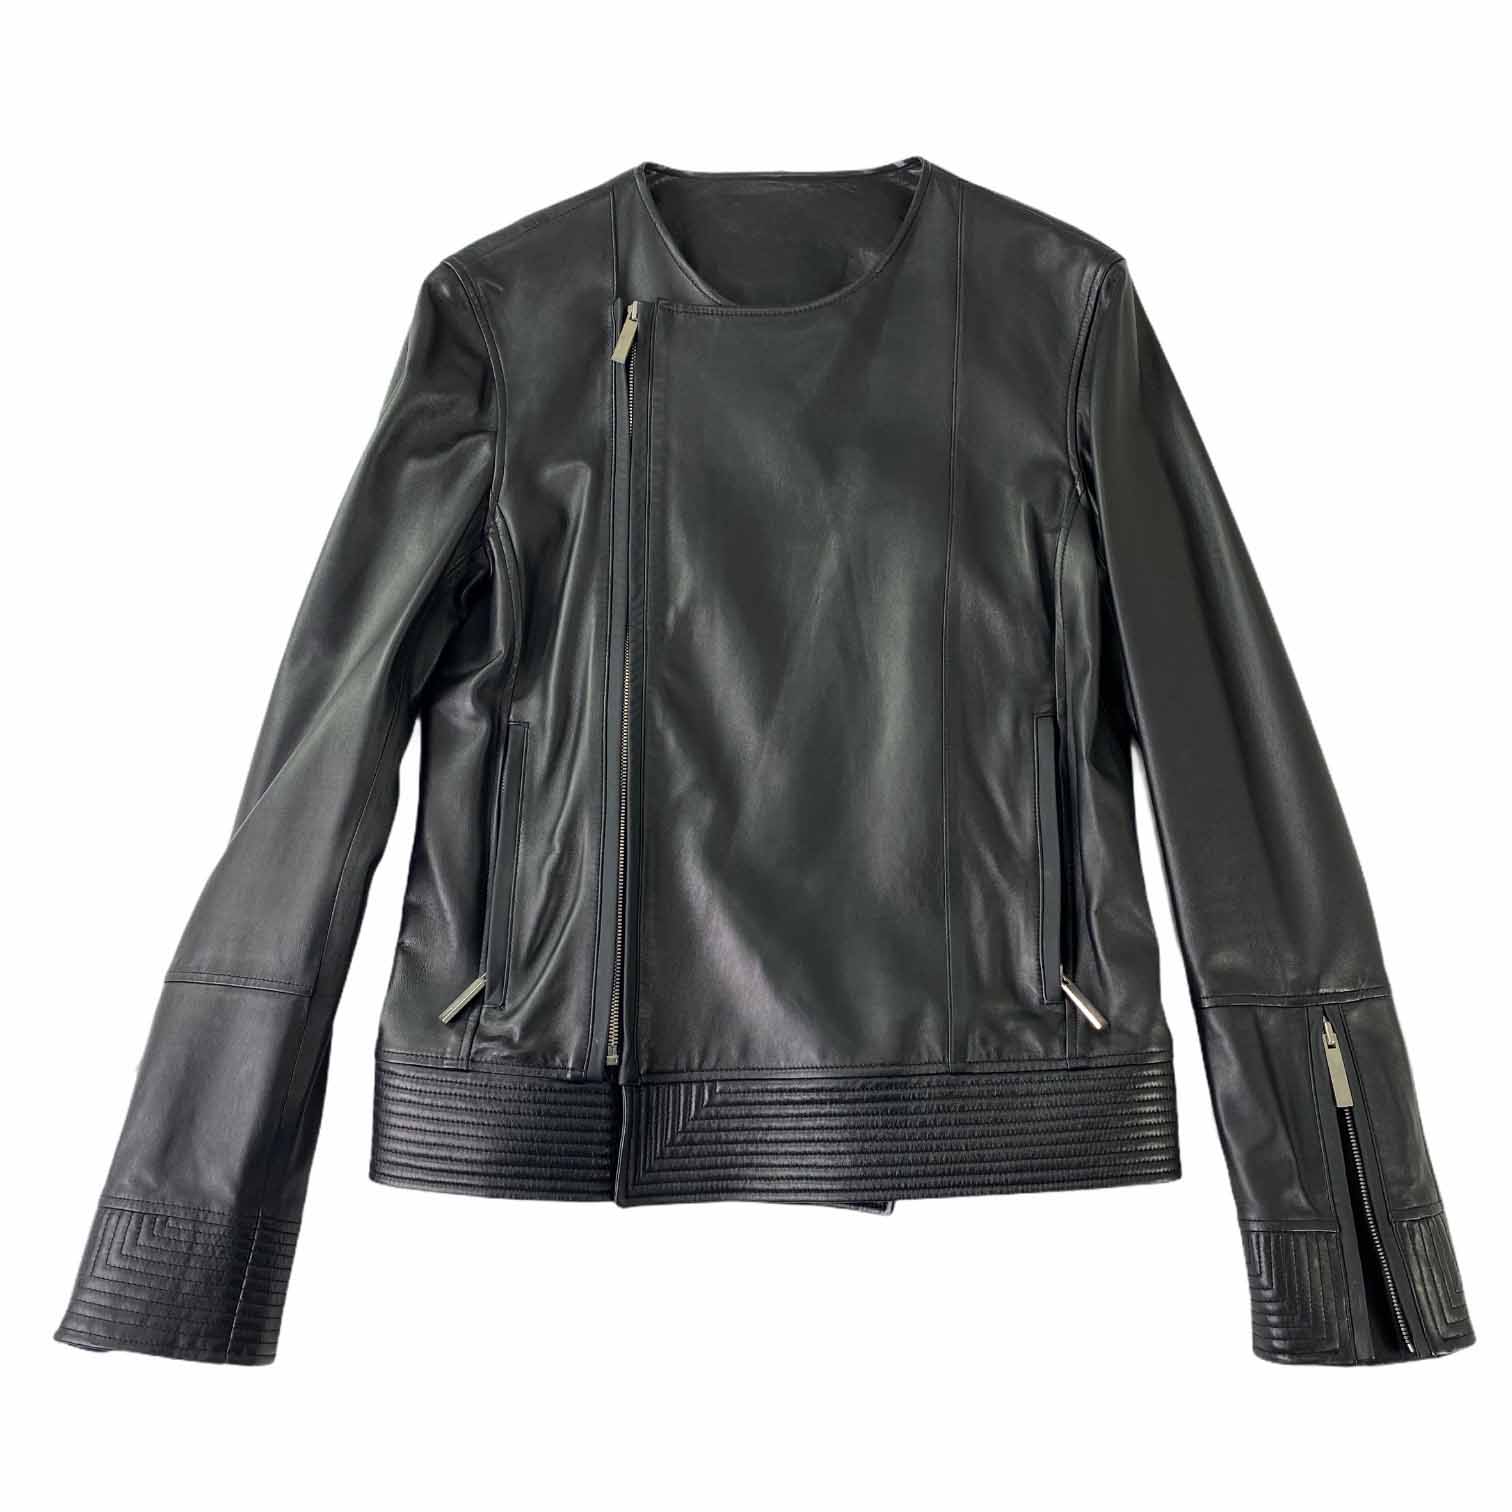 [Jehee Sheen] Round Neck Leather Jacket BK - Free Size